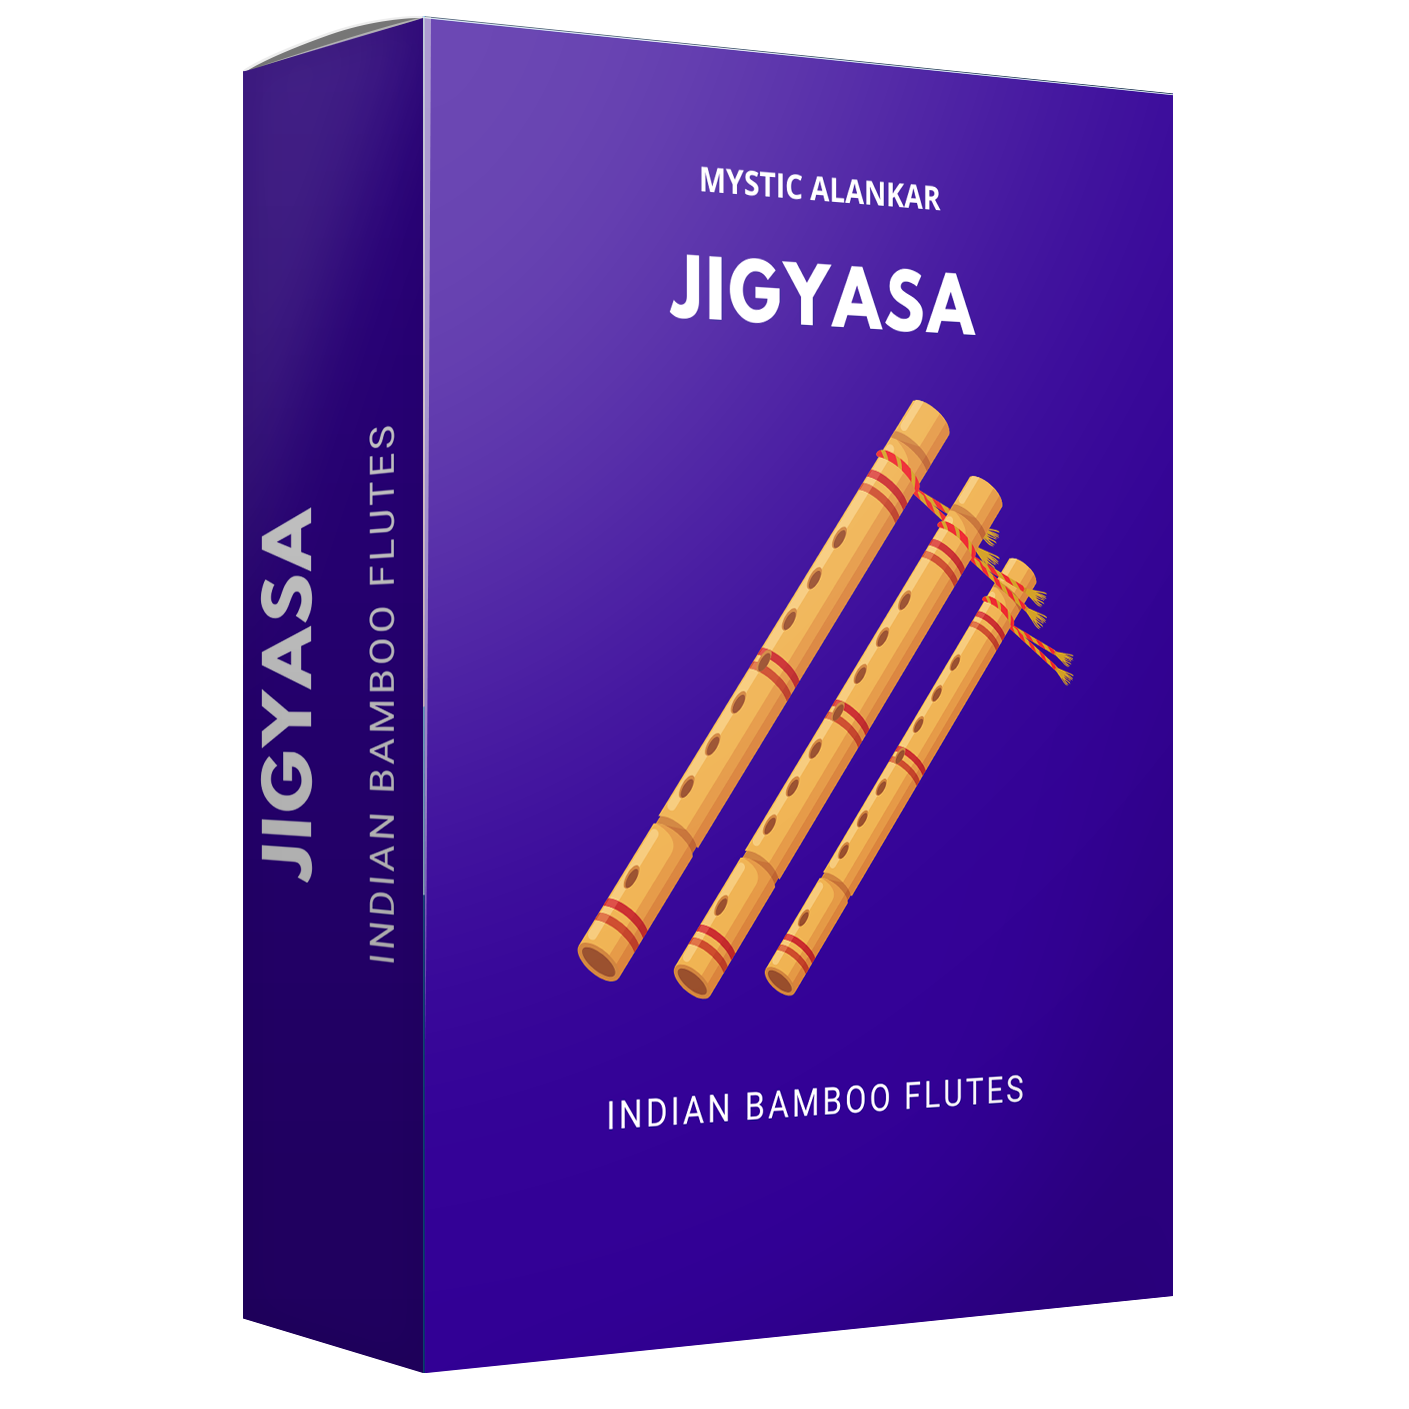 Jigyasa - Indian Bamboo Flutes